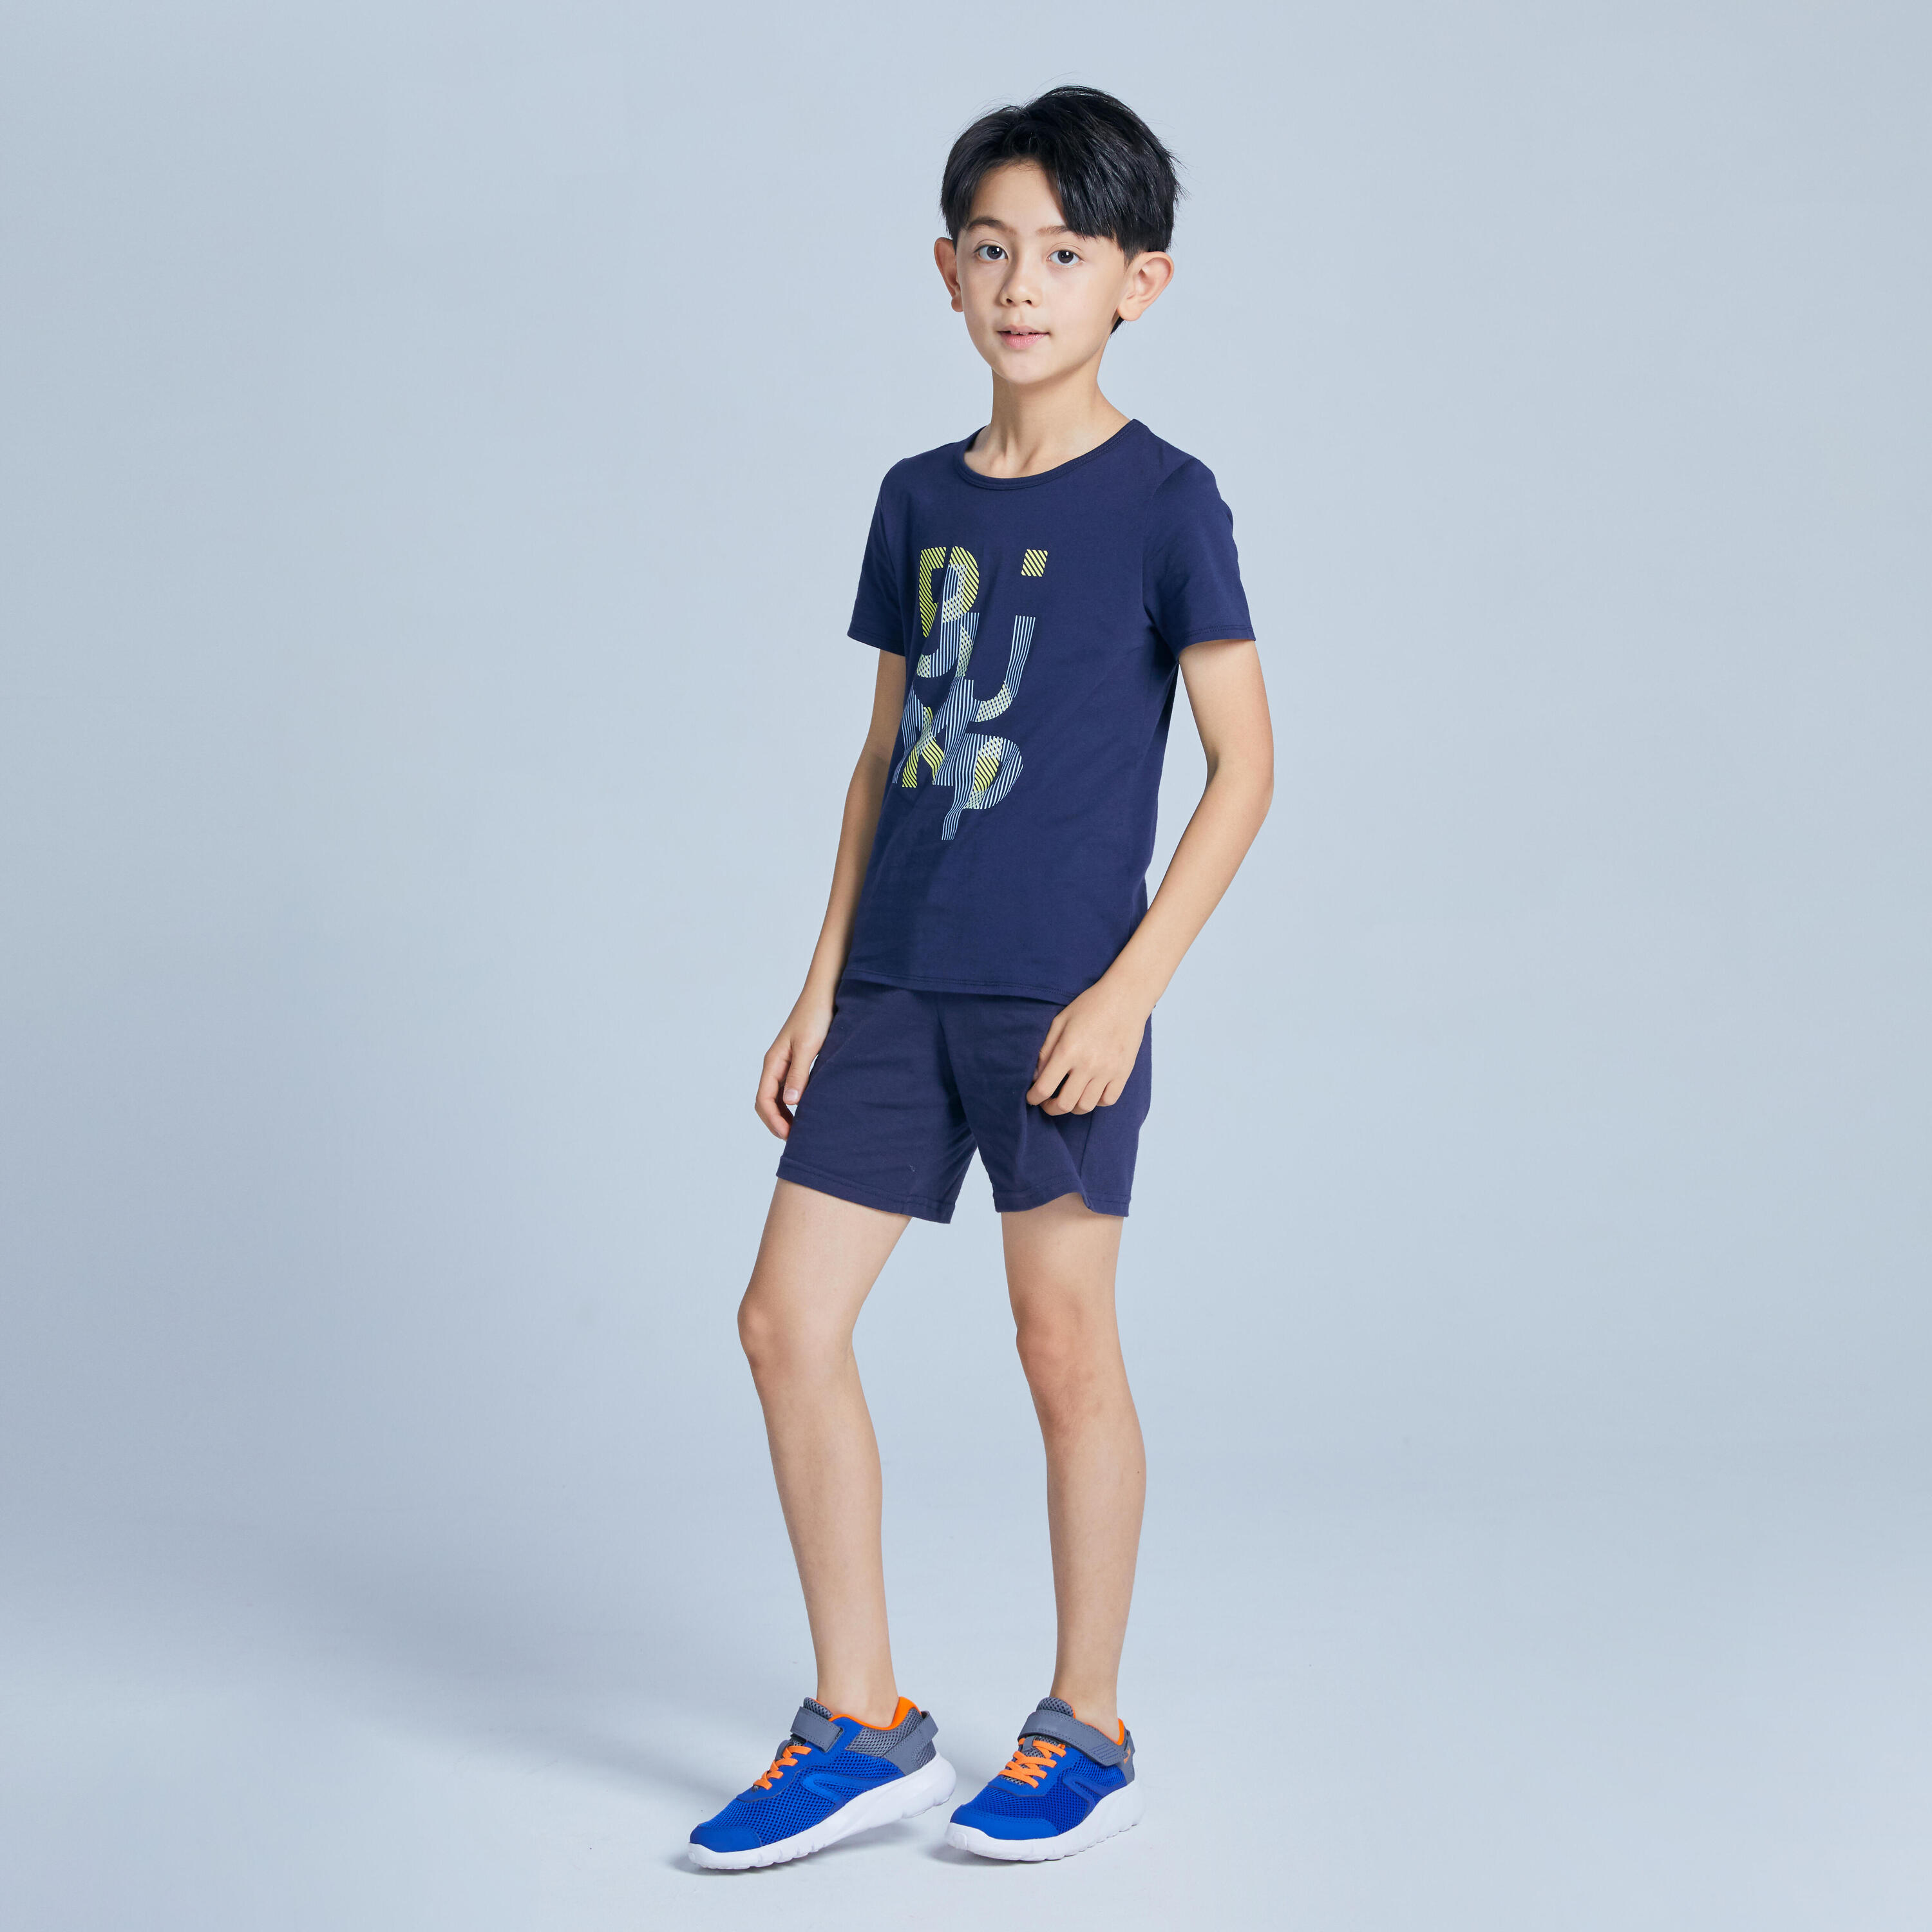 Kids' Basic T-Shirt - Navy Blue Print 3/3